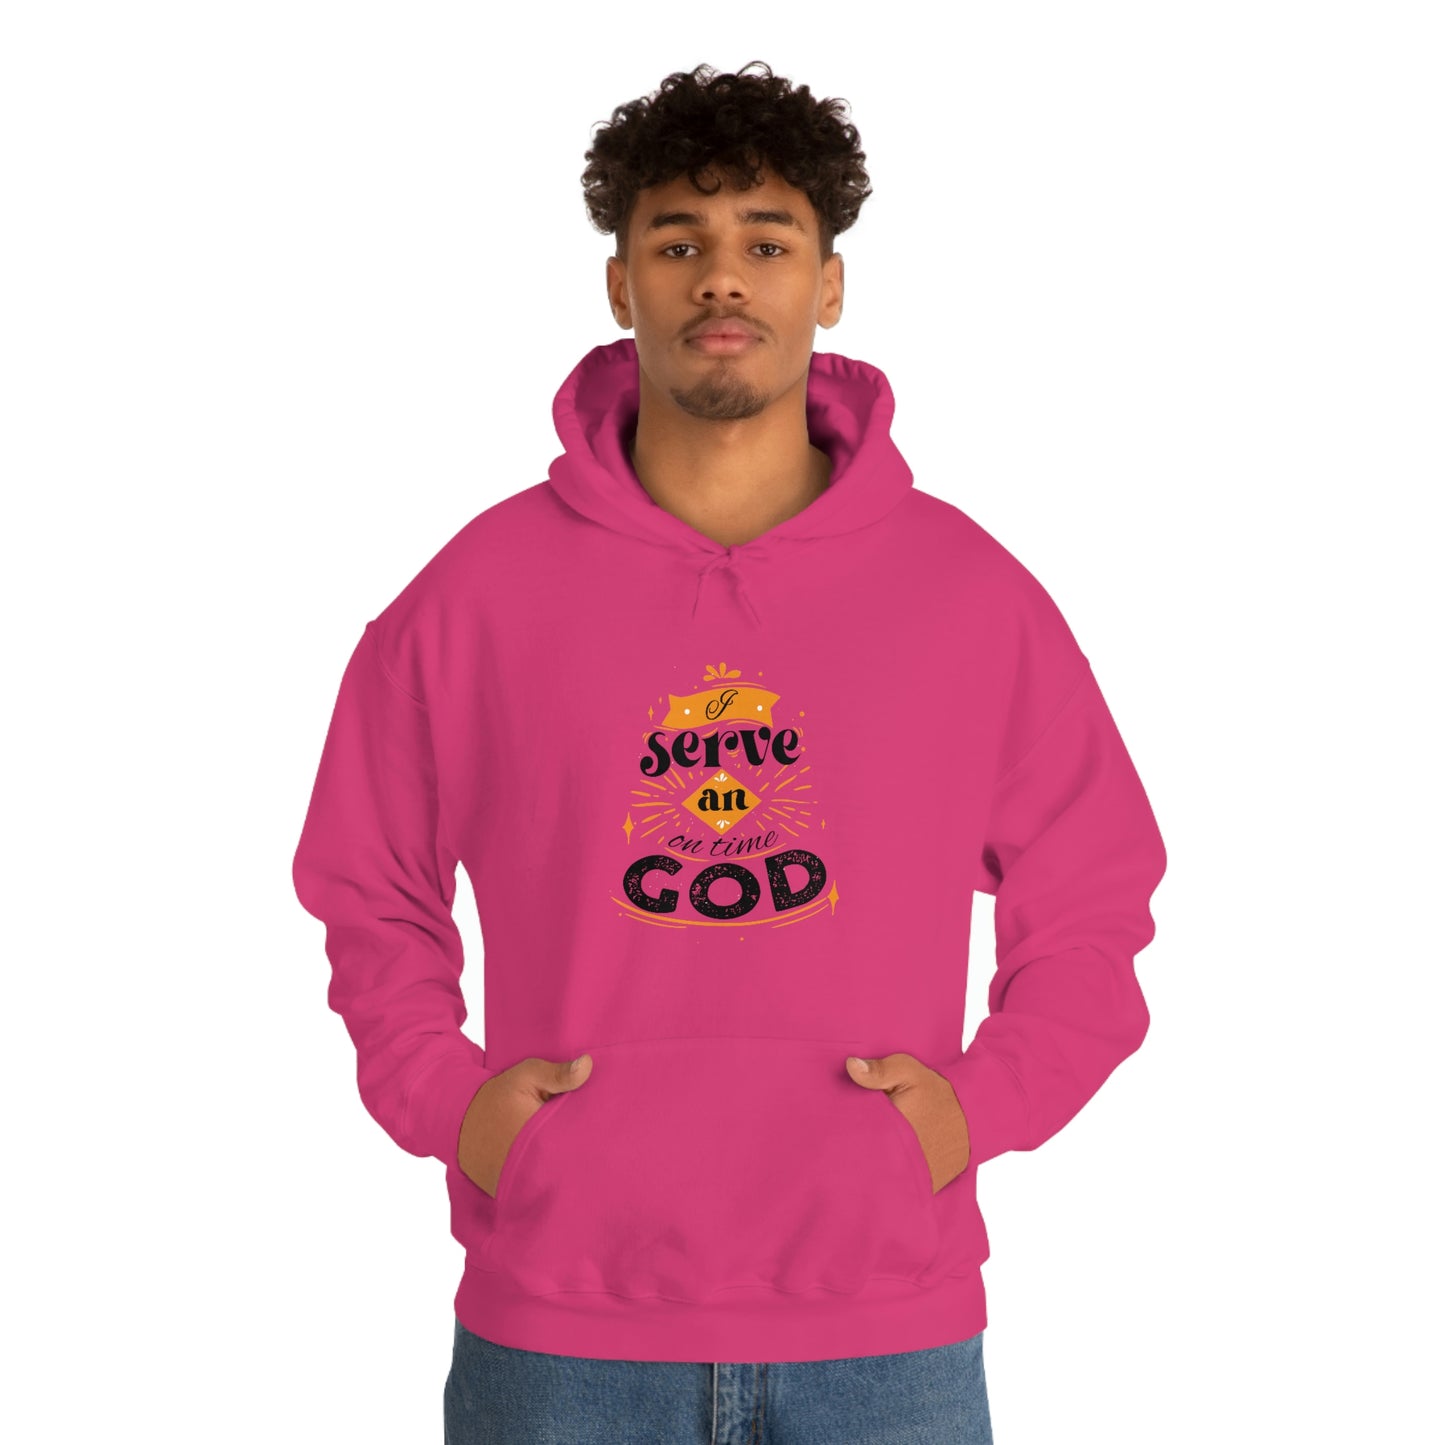 I Serve An On Time God Unisex Pull On Hooded sweatshirt